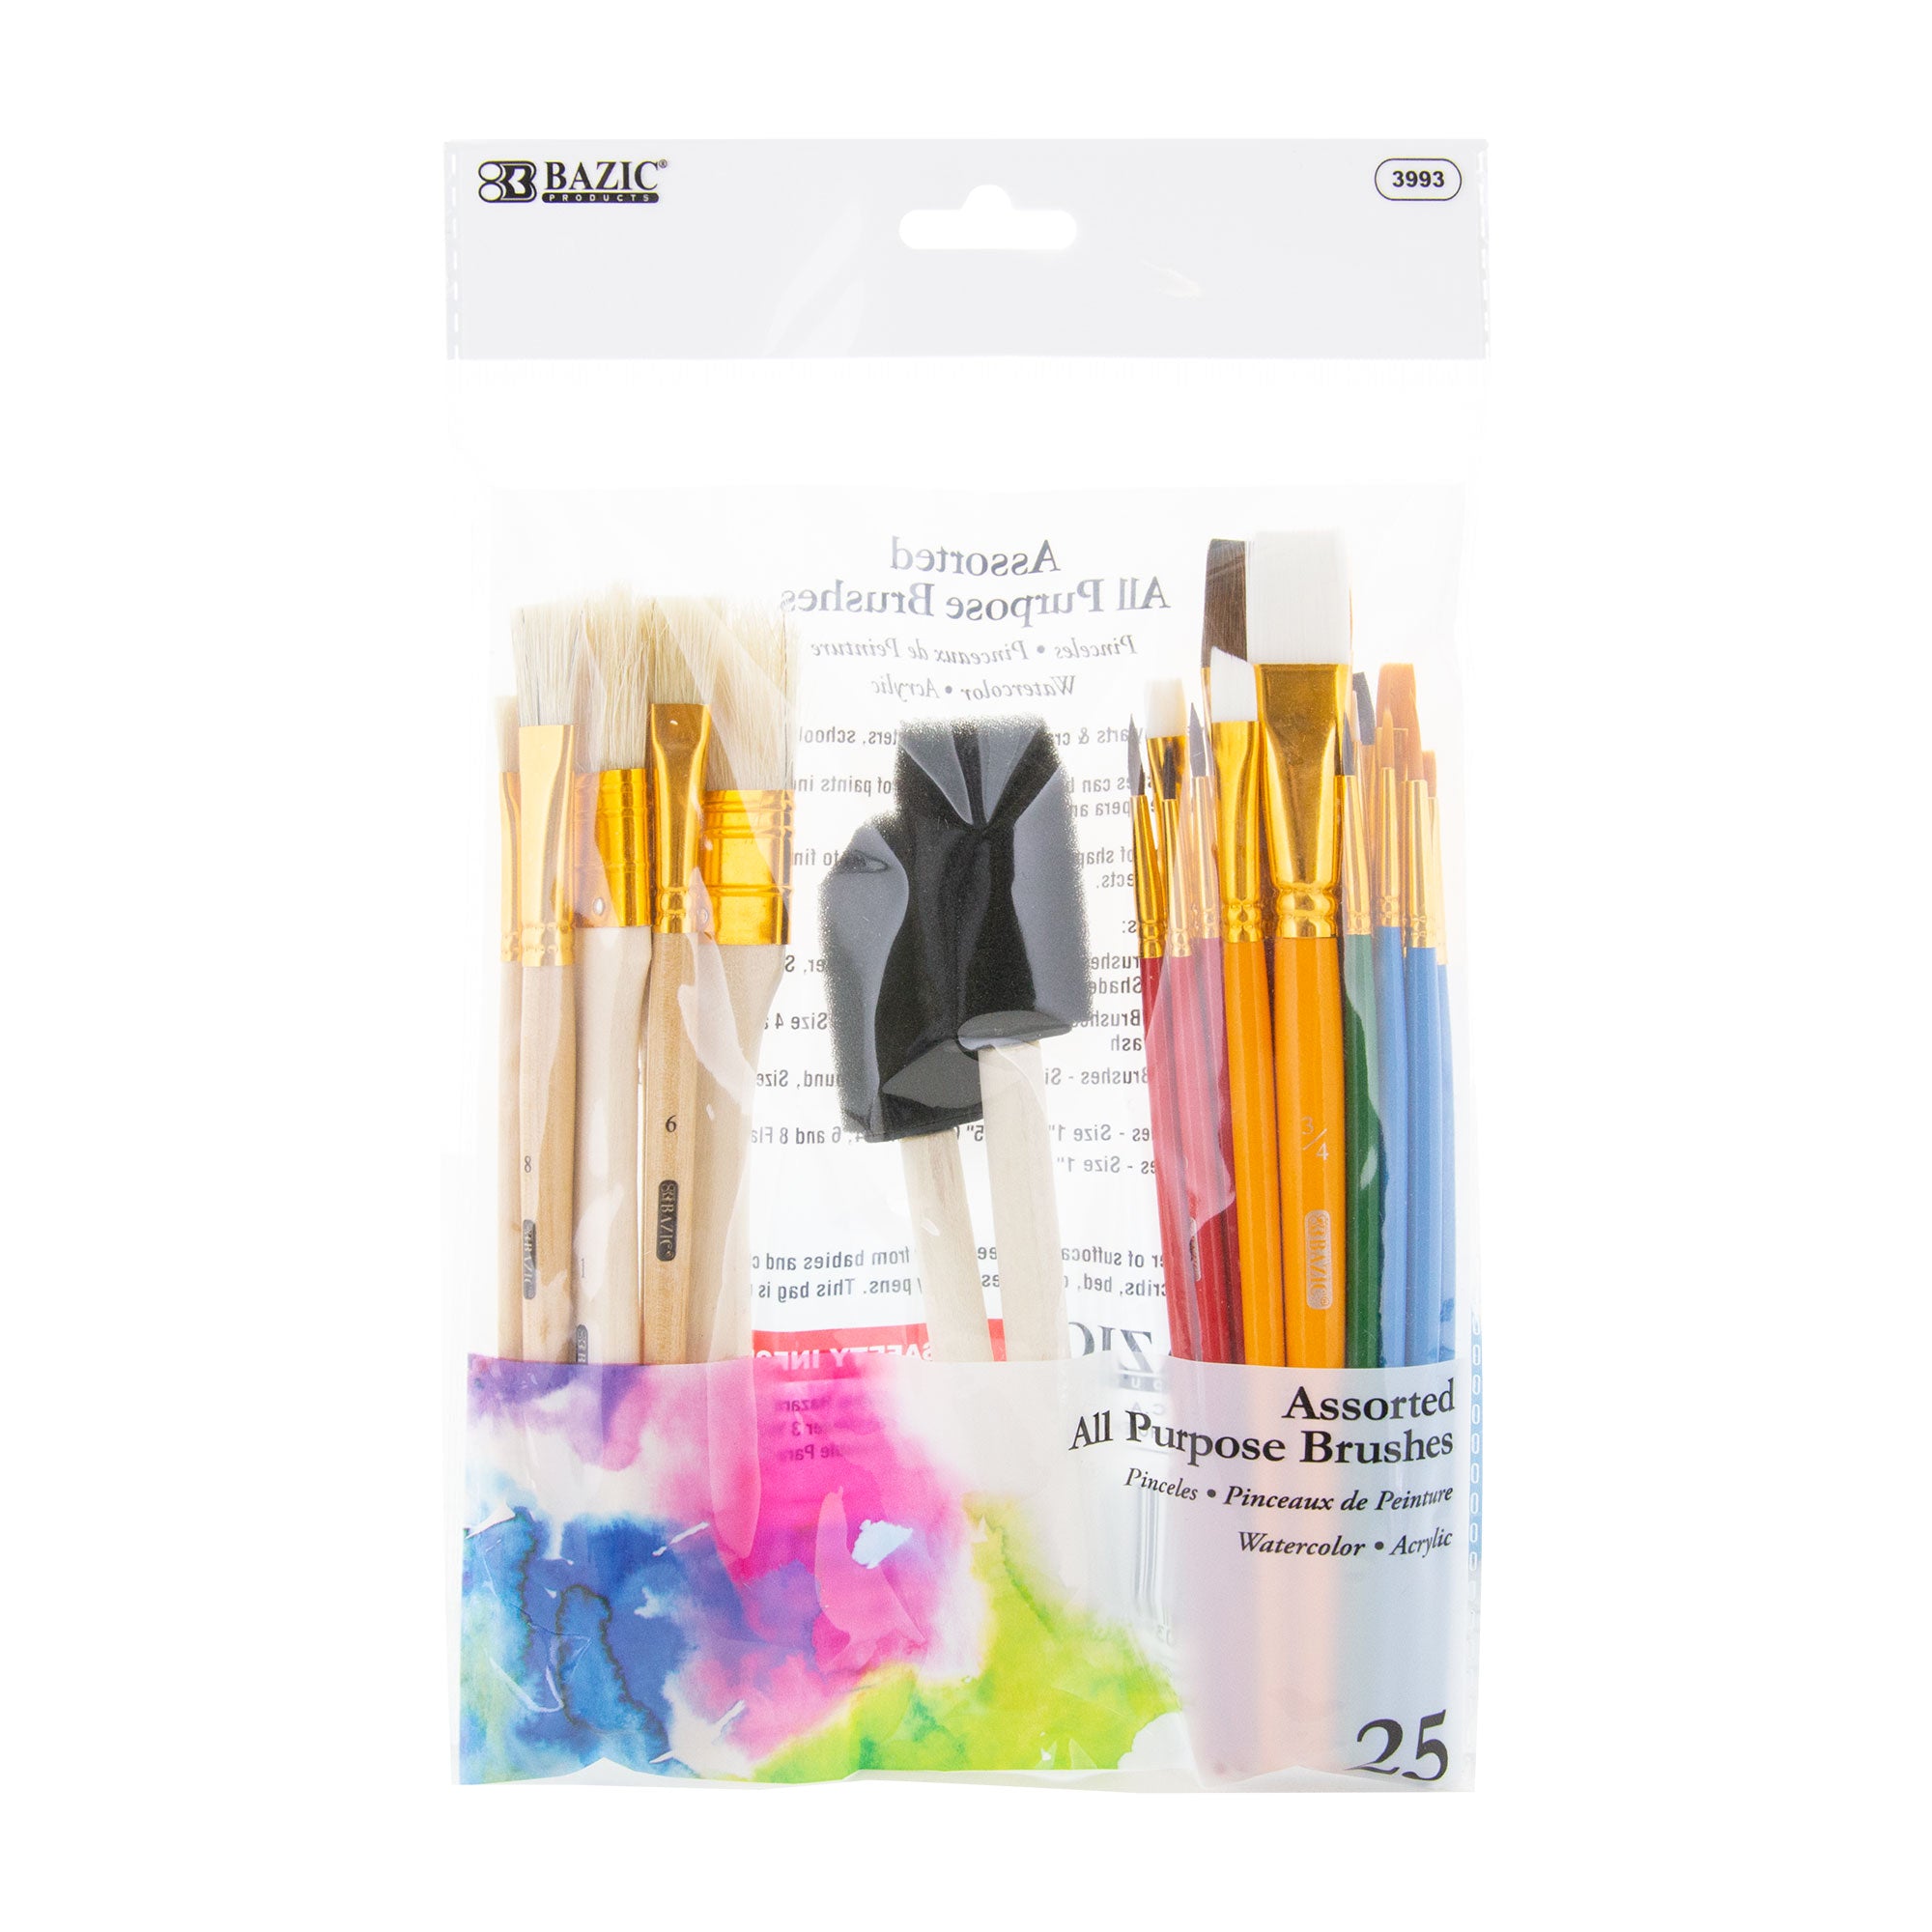 Colour Block Bristle Paint Brush Set - 12 Pack